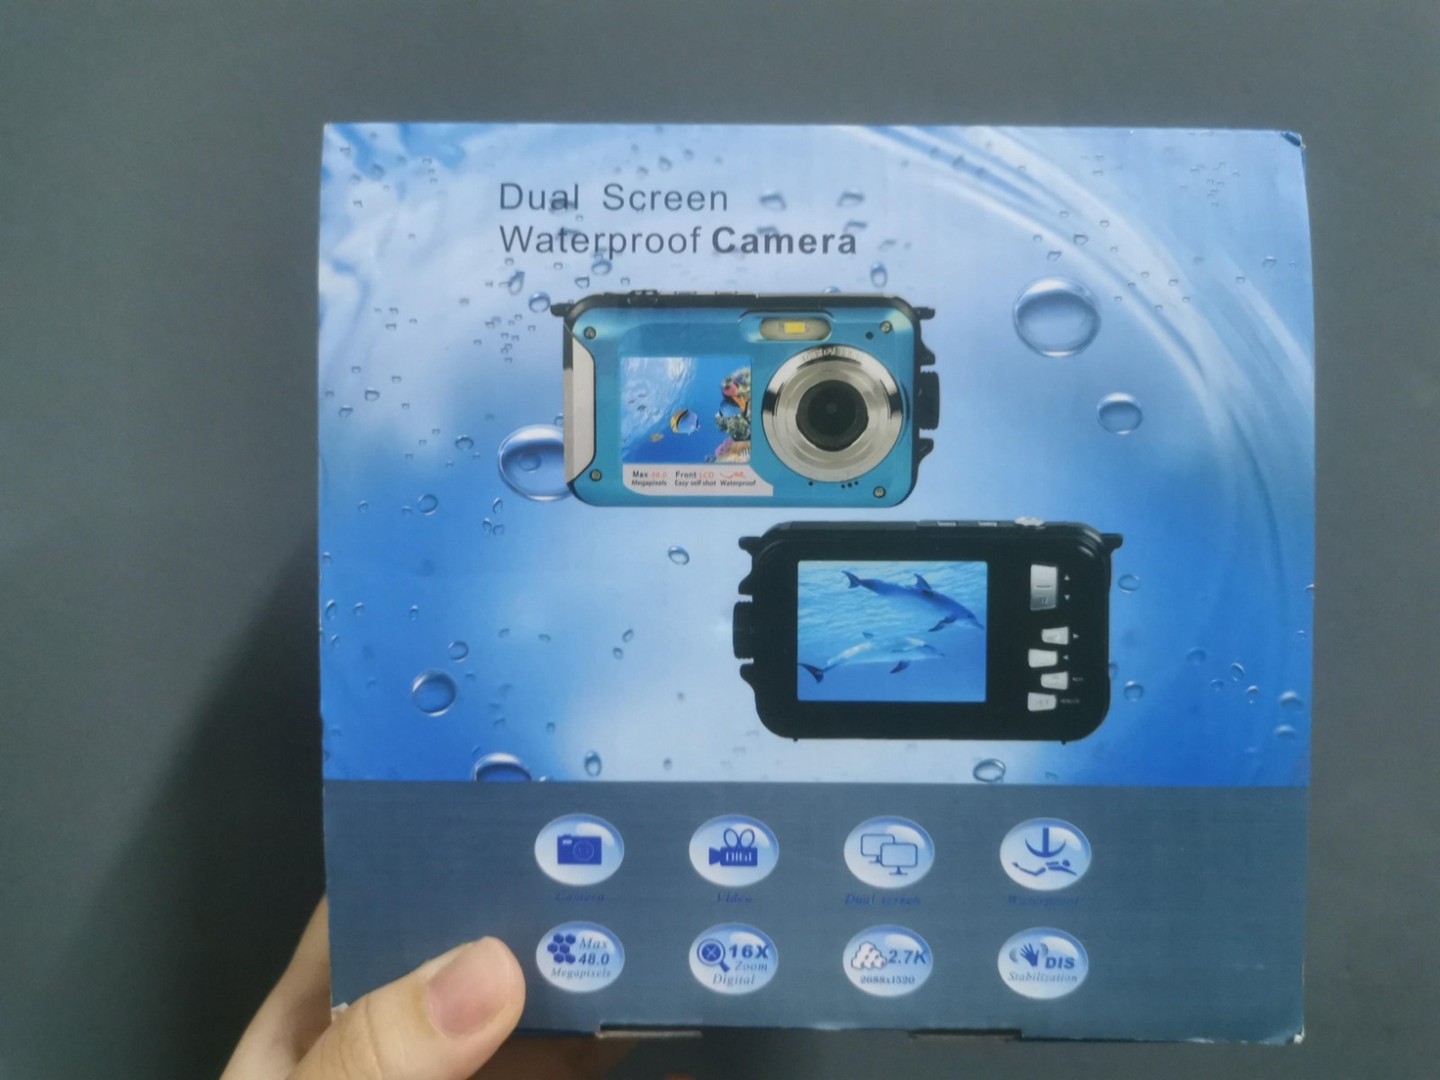 camaras y audio - OFERTA CAMARA - Double Screens Waterproof Camera 3